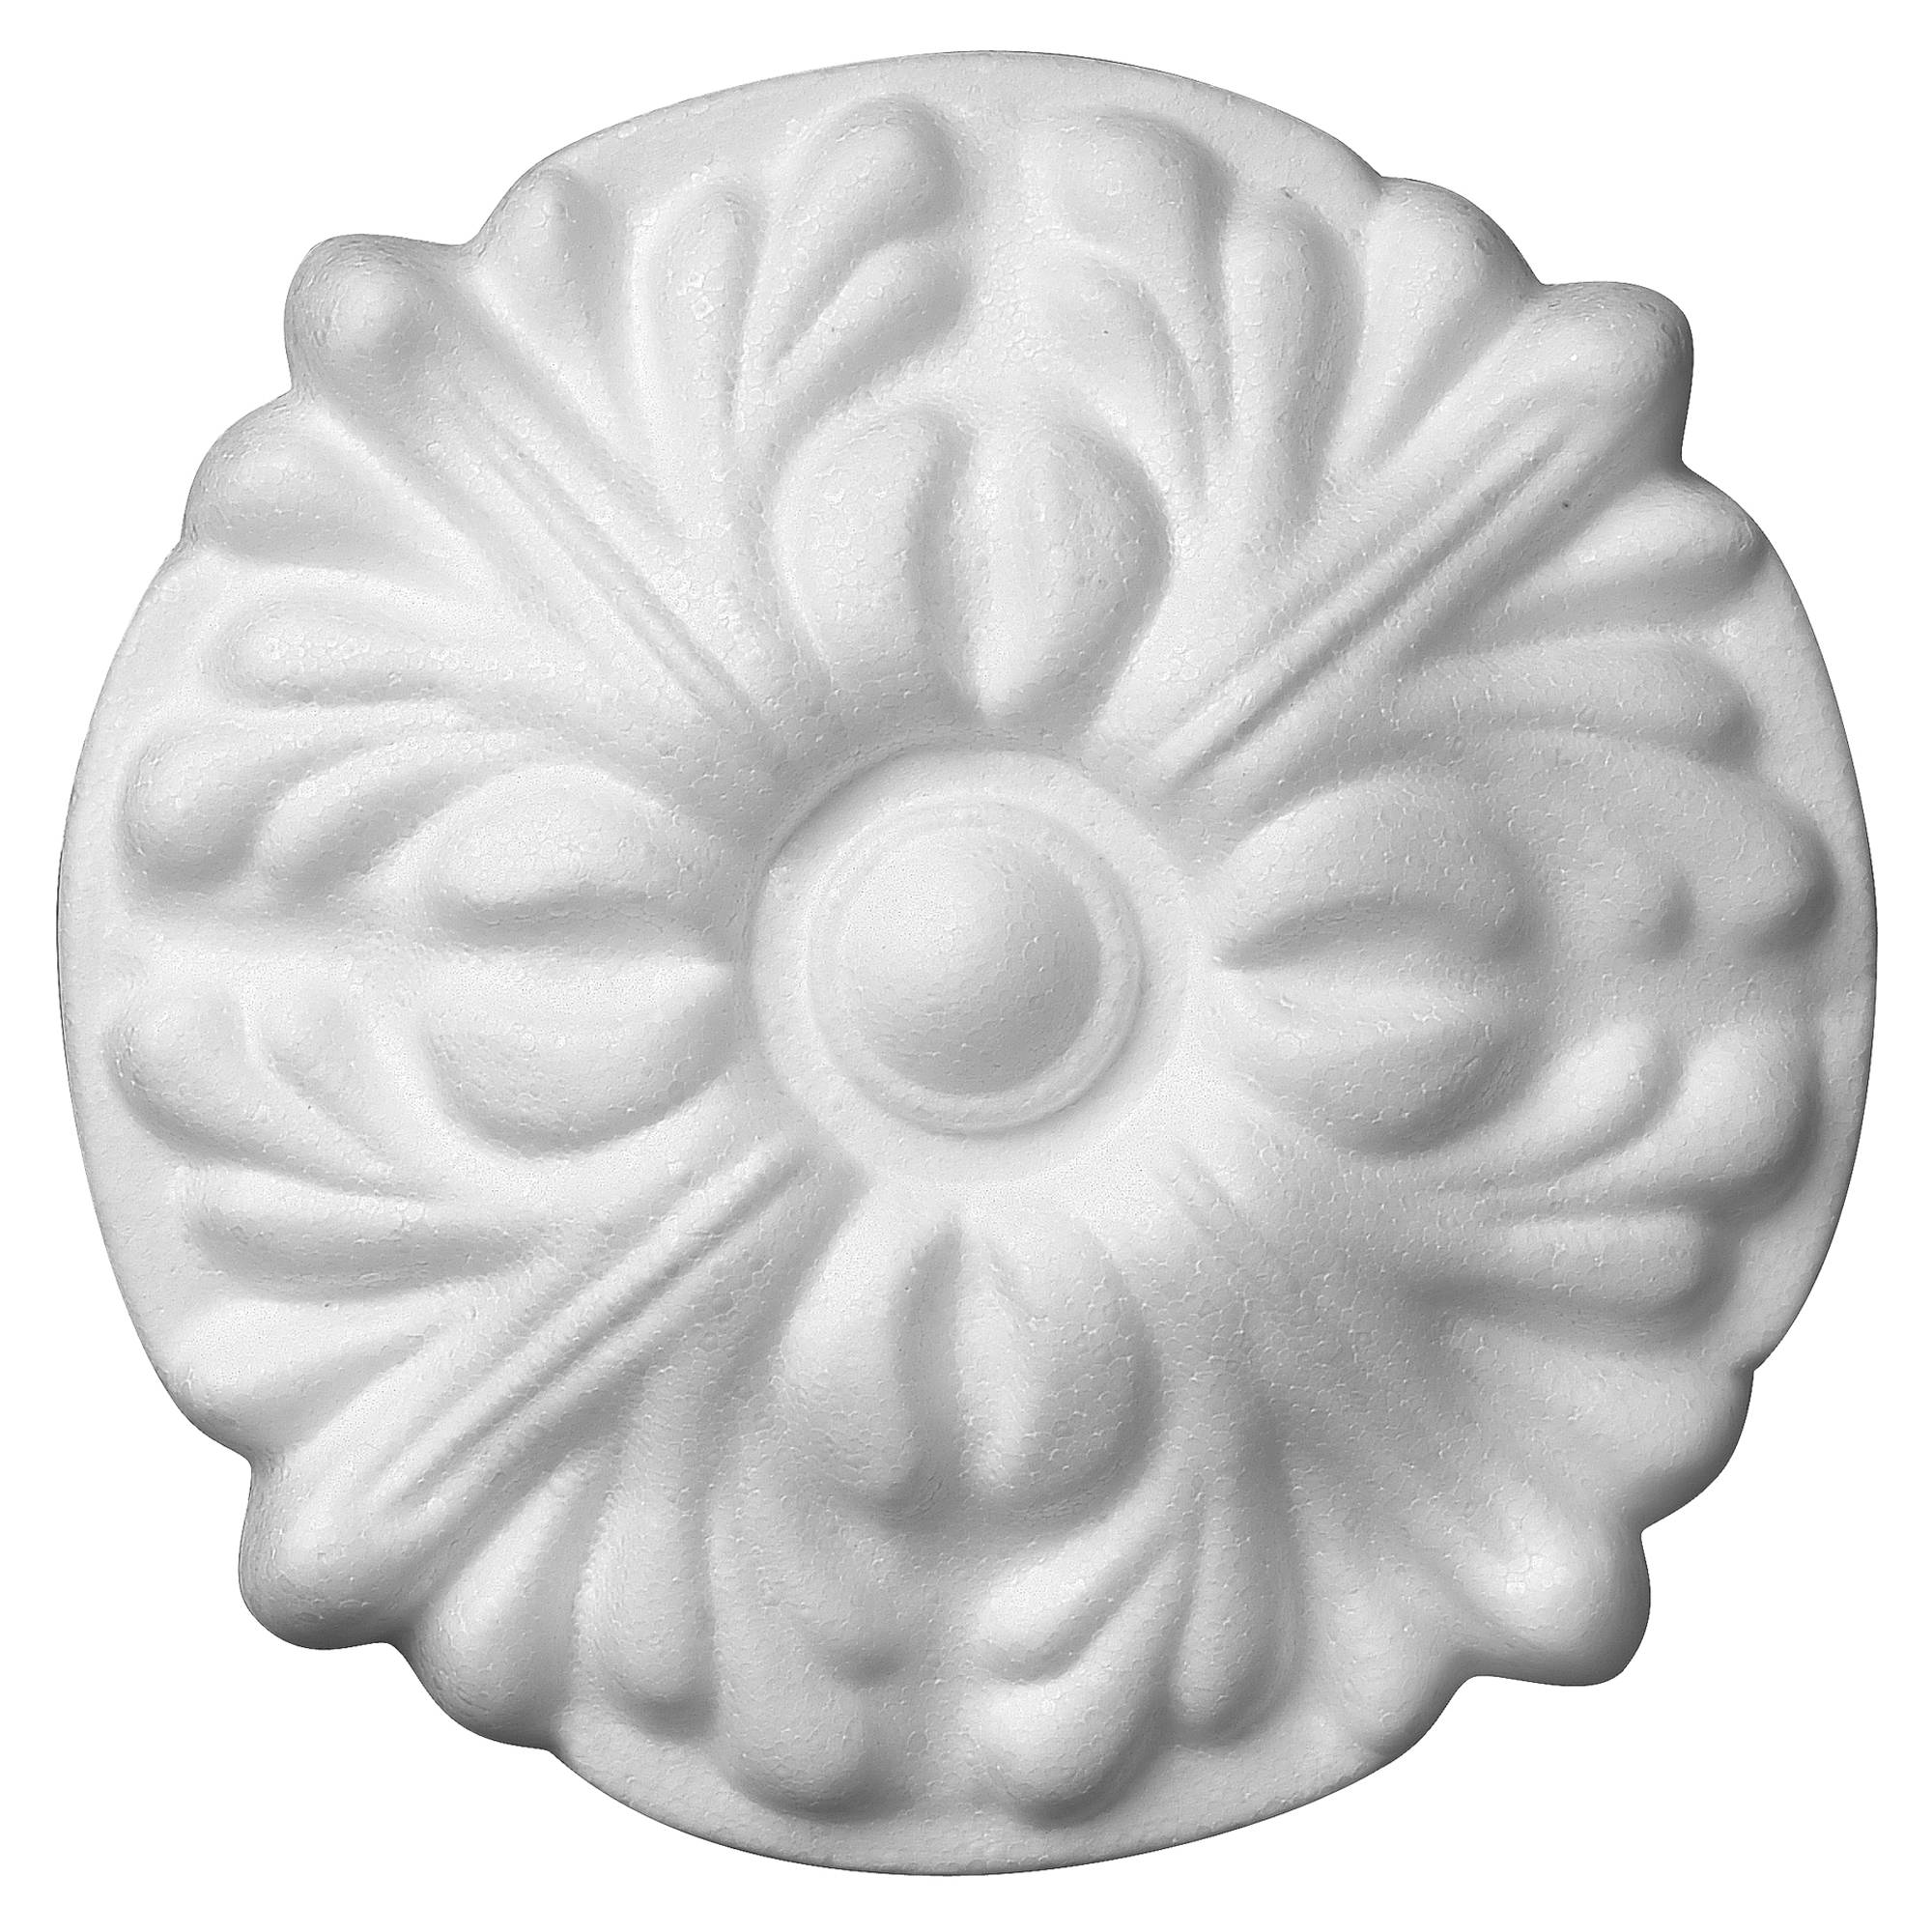 Decosa 3D-Walltattoo 'Fleurie' Ø 16 cm, 2 Stück + product picture